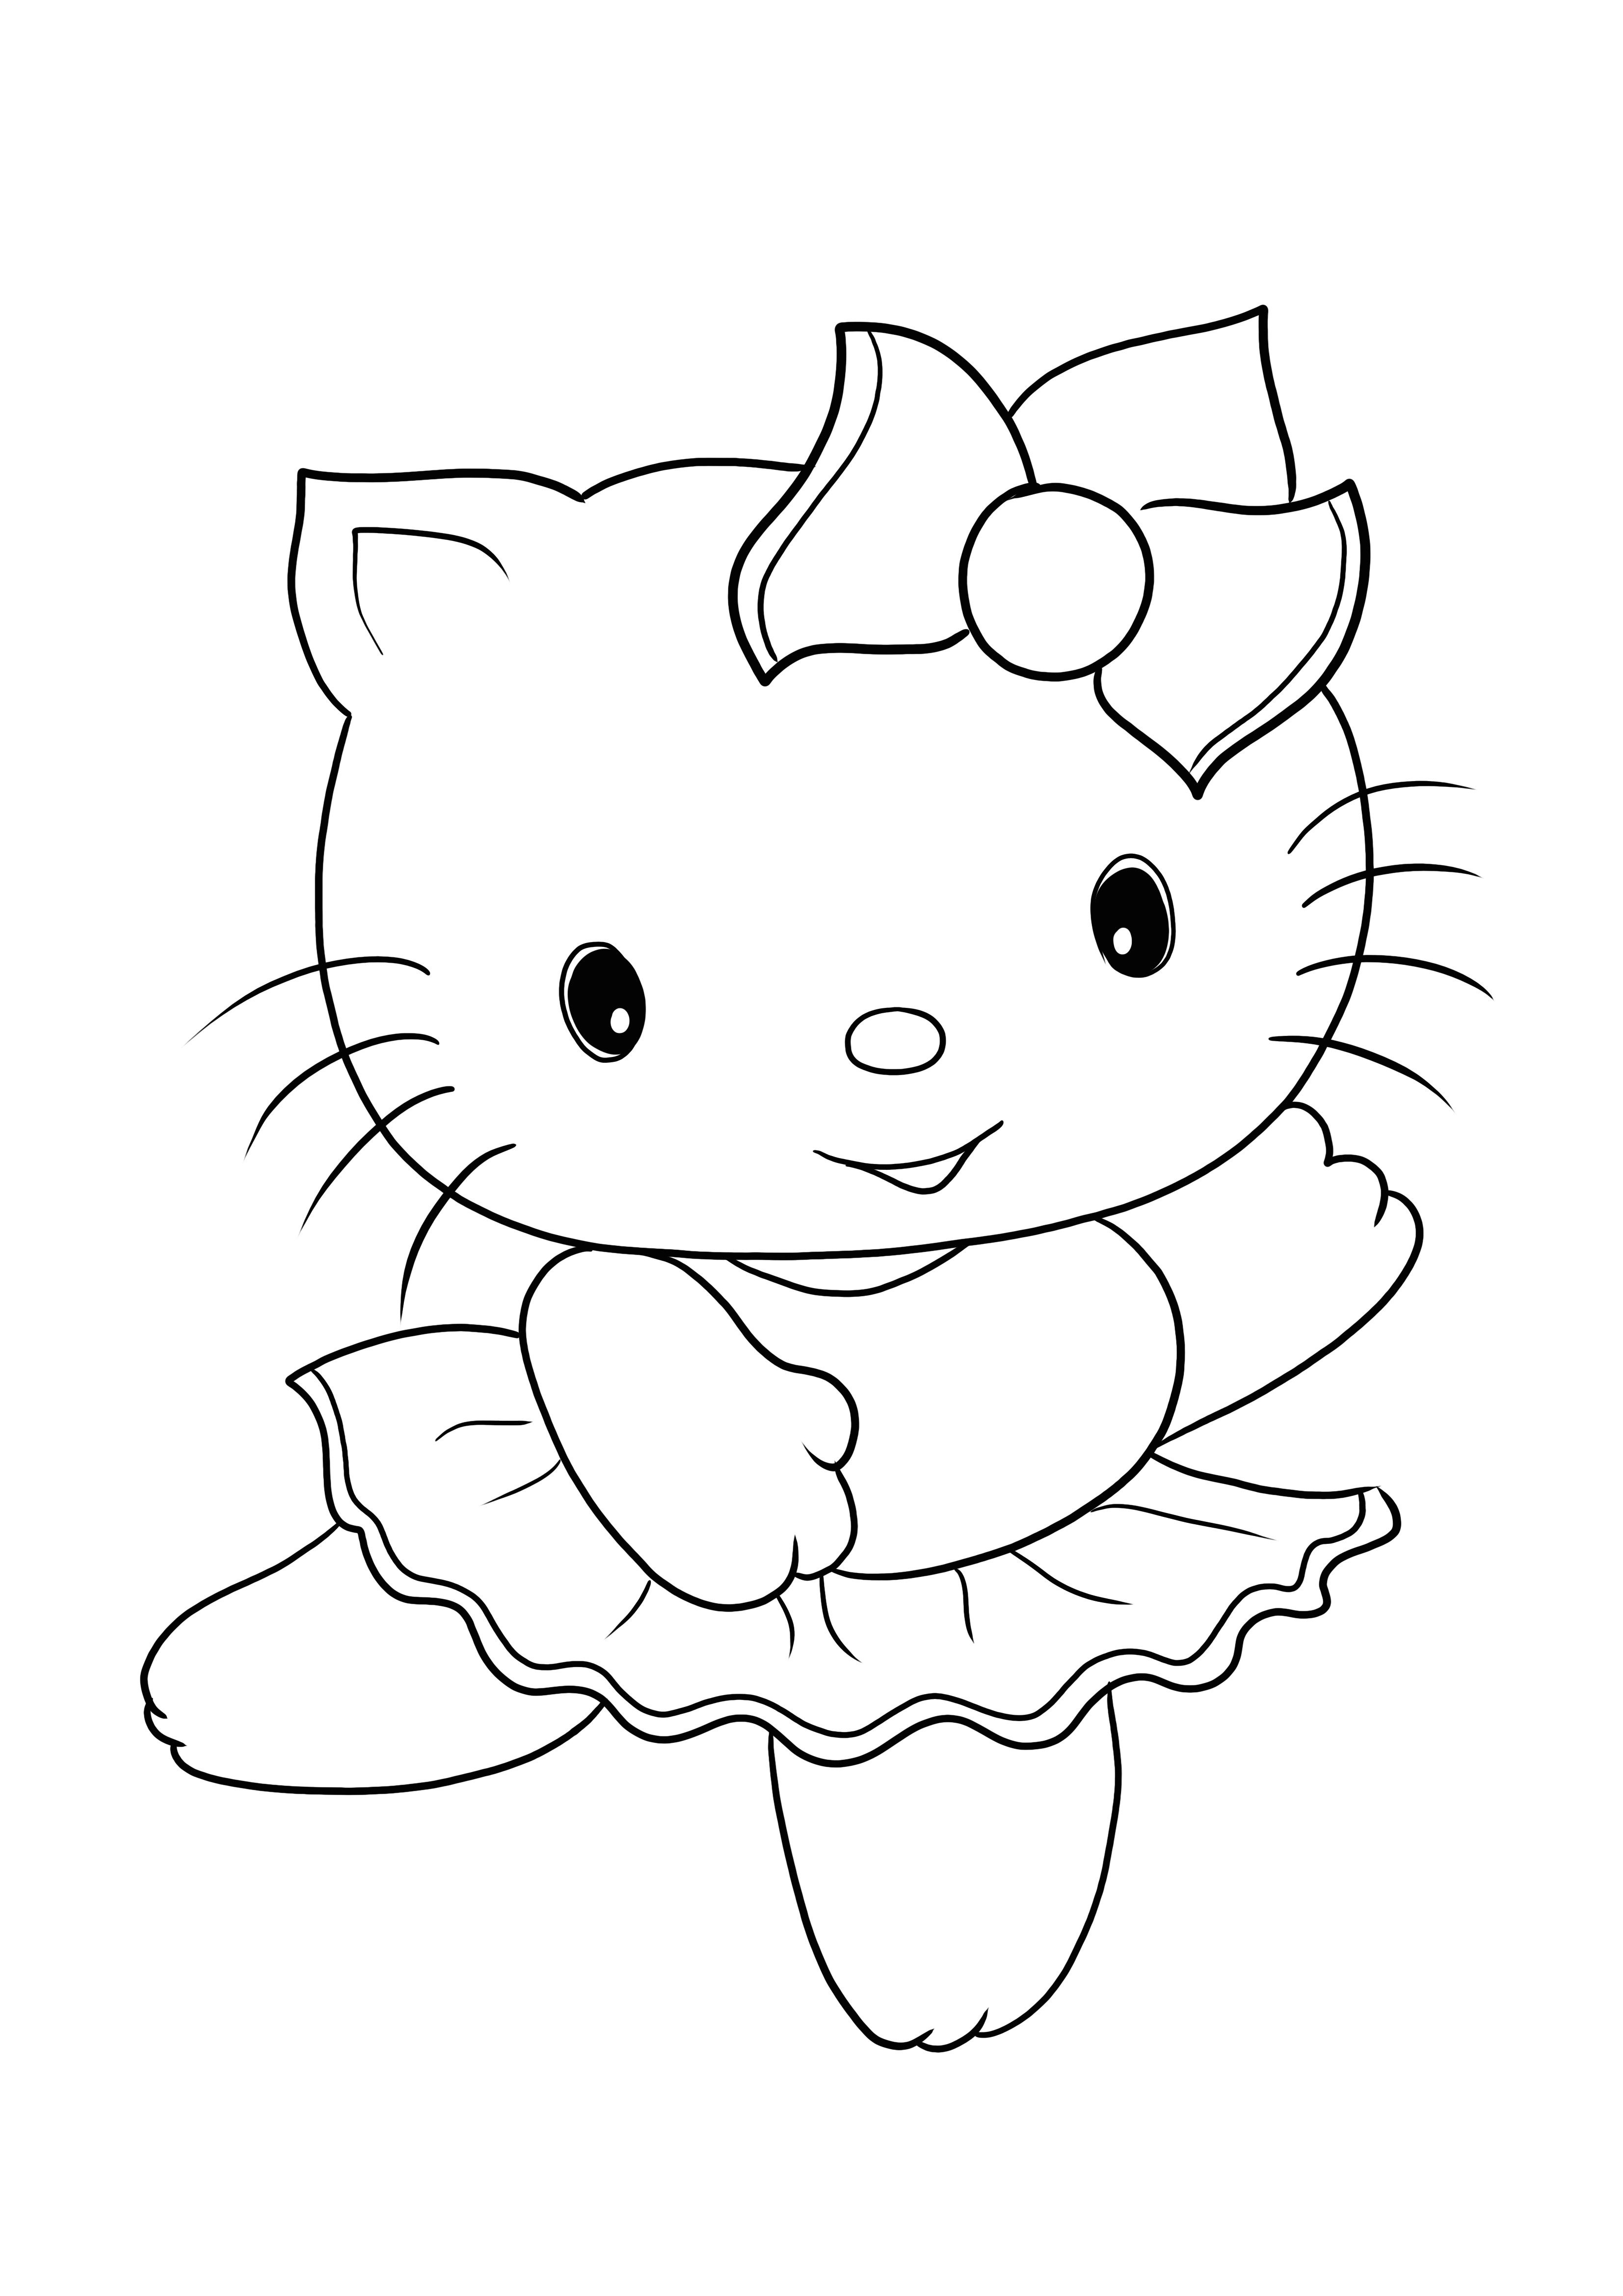 Her yaş için sevimli Hello Kitty resminin ücretsiz baskısı ve renklendirilmesi